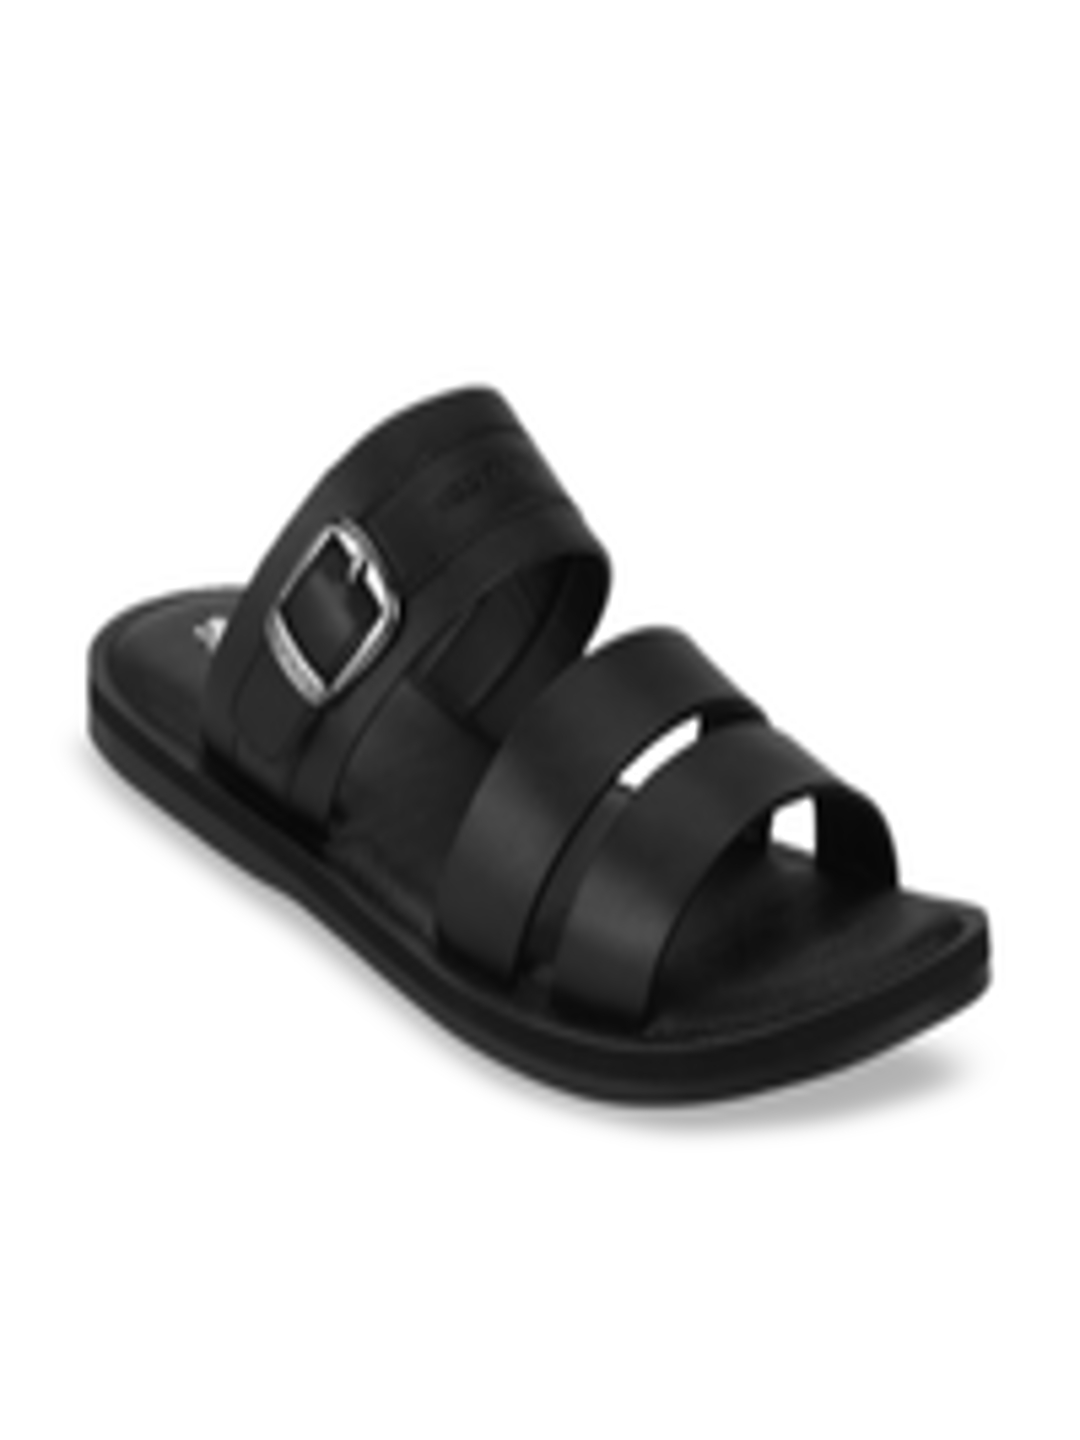 Buy Red Tape Men Black Sandals - Sandals for Men 10607862 | Myntra